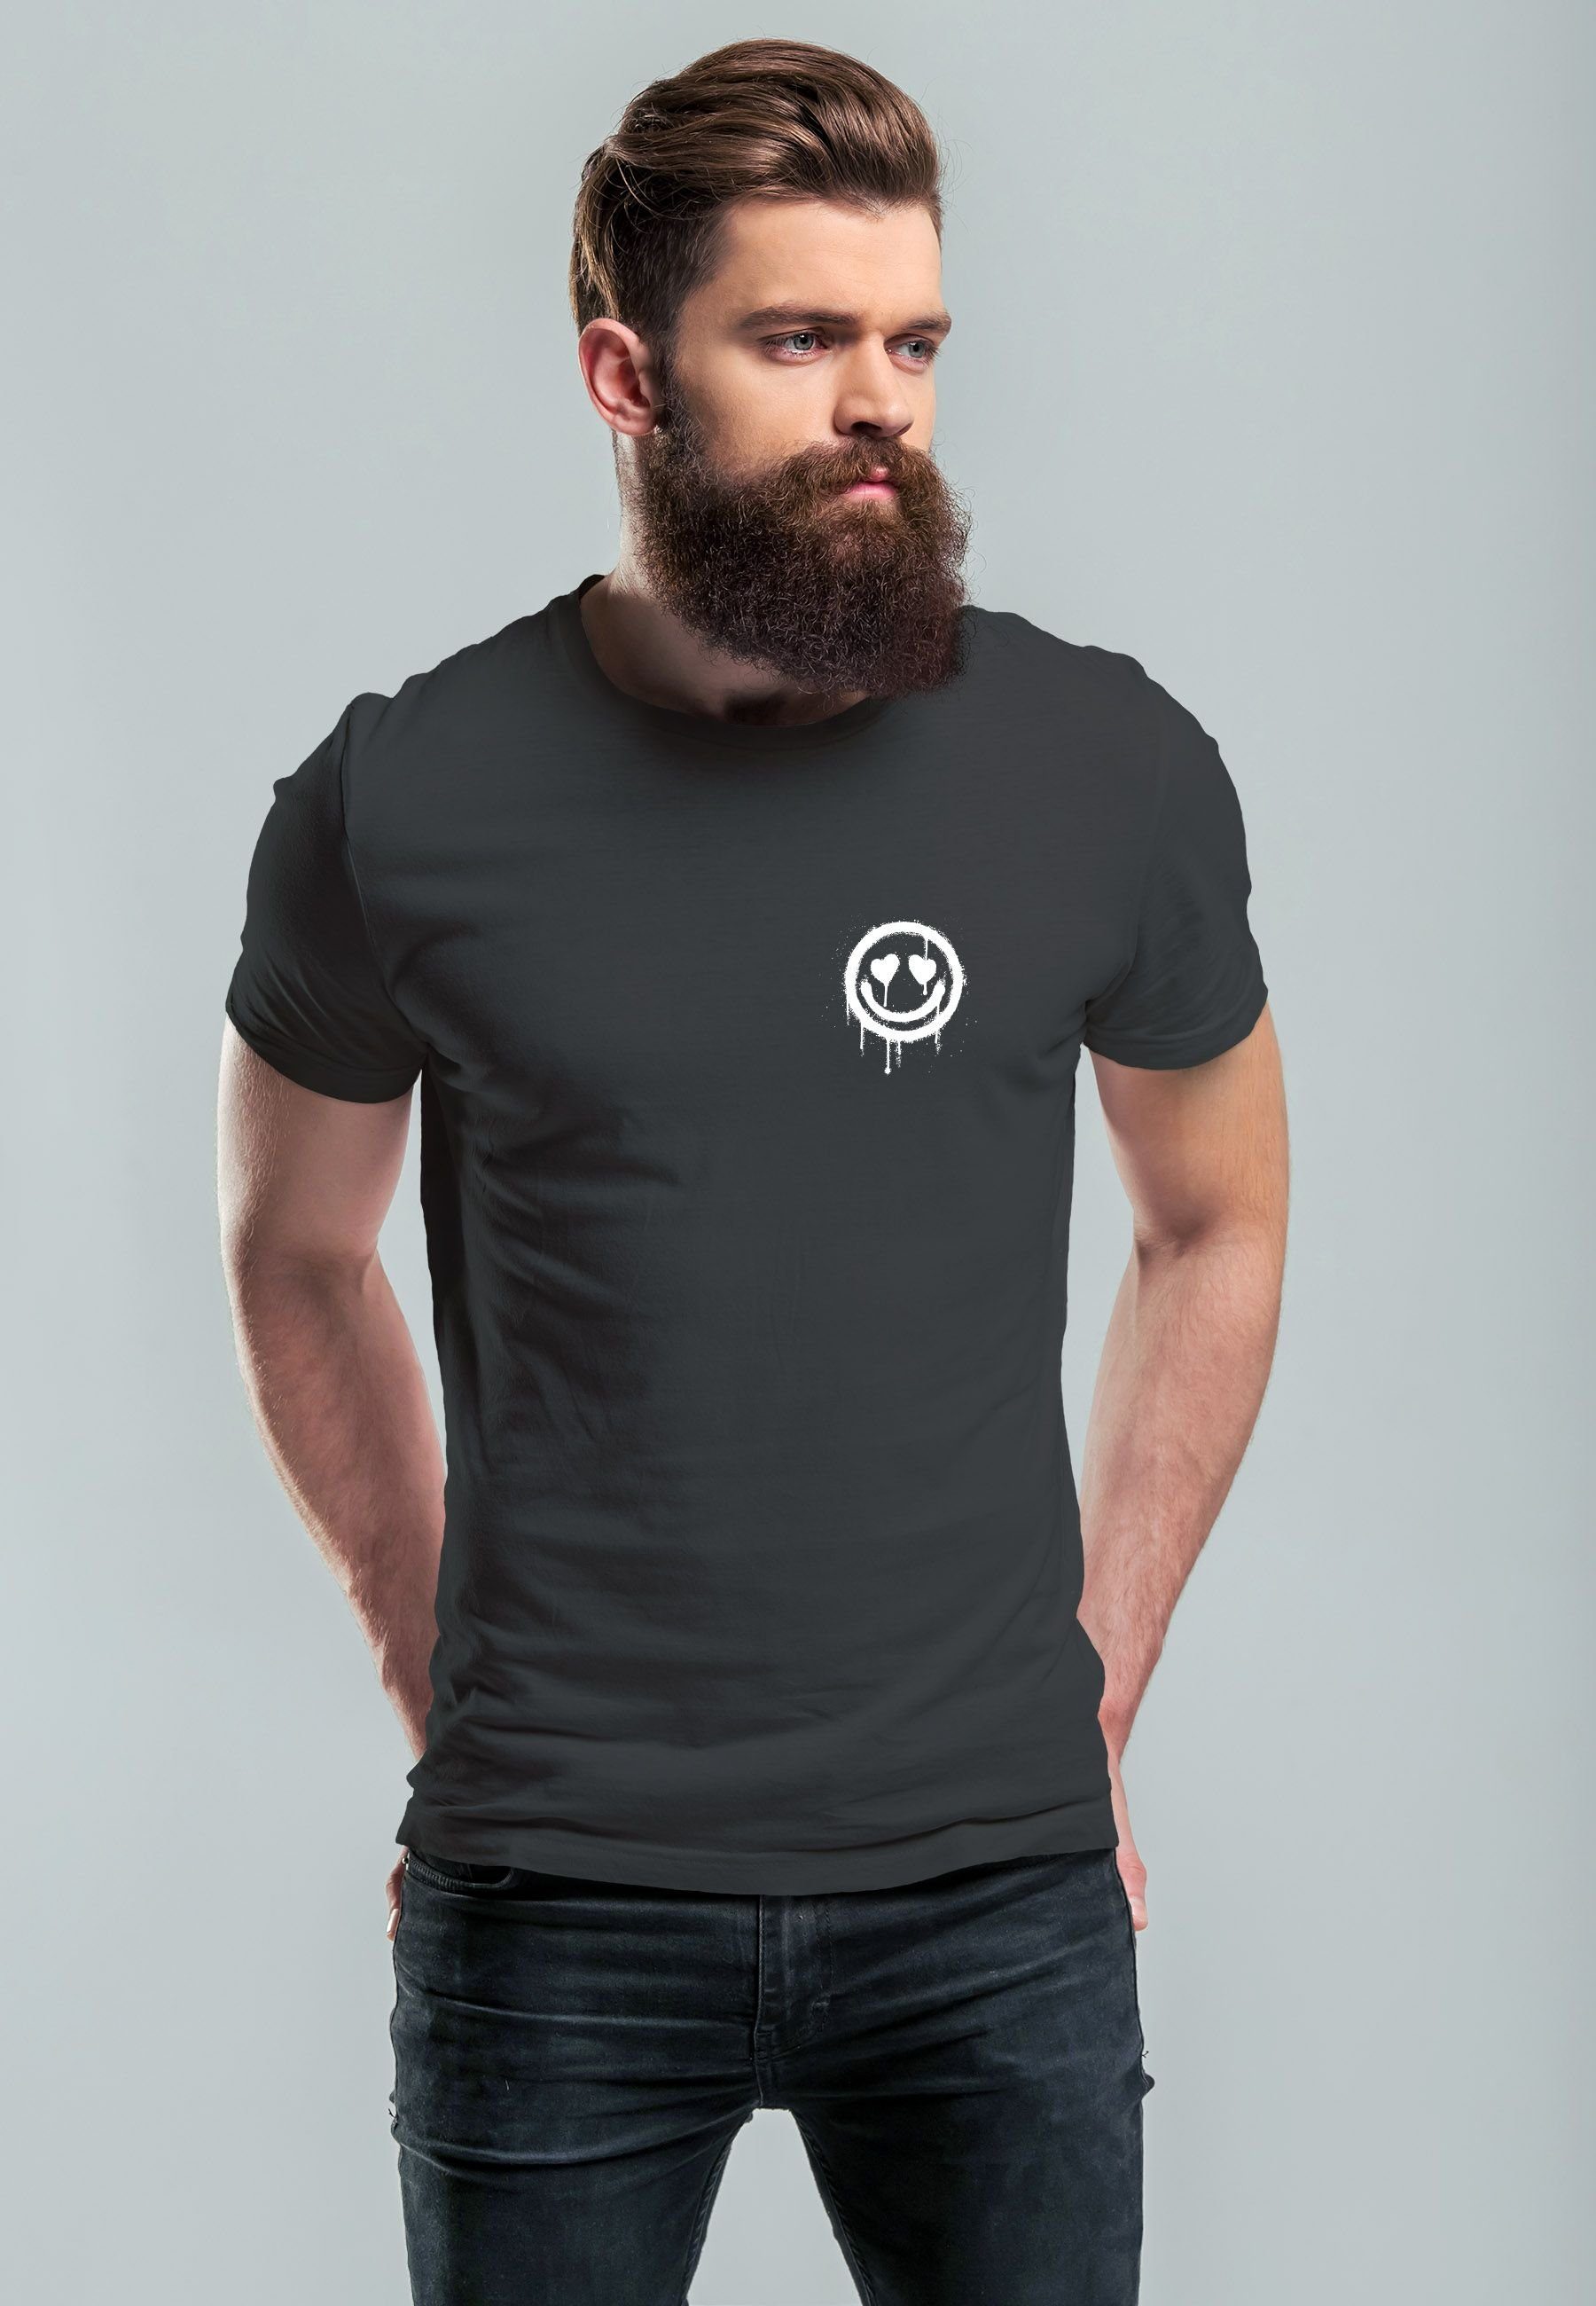 Neverless Print-Shirt Herren T-Shirt Smile Print anthrazit Print Drippy Face mit Motiv Aufdruck Drip Herz-Augen